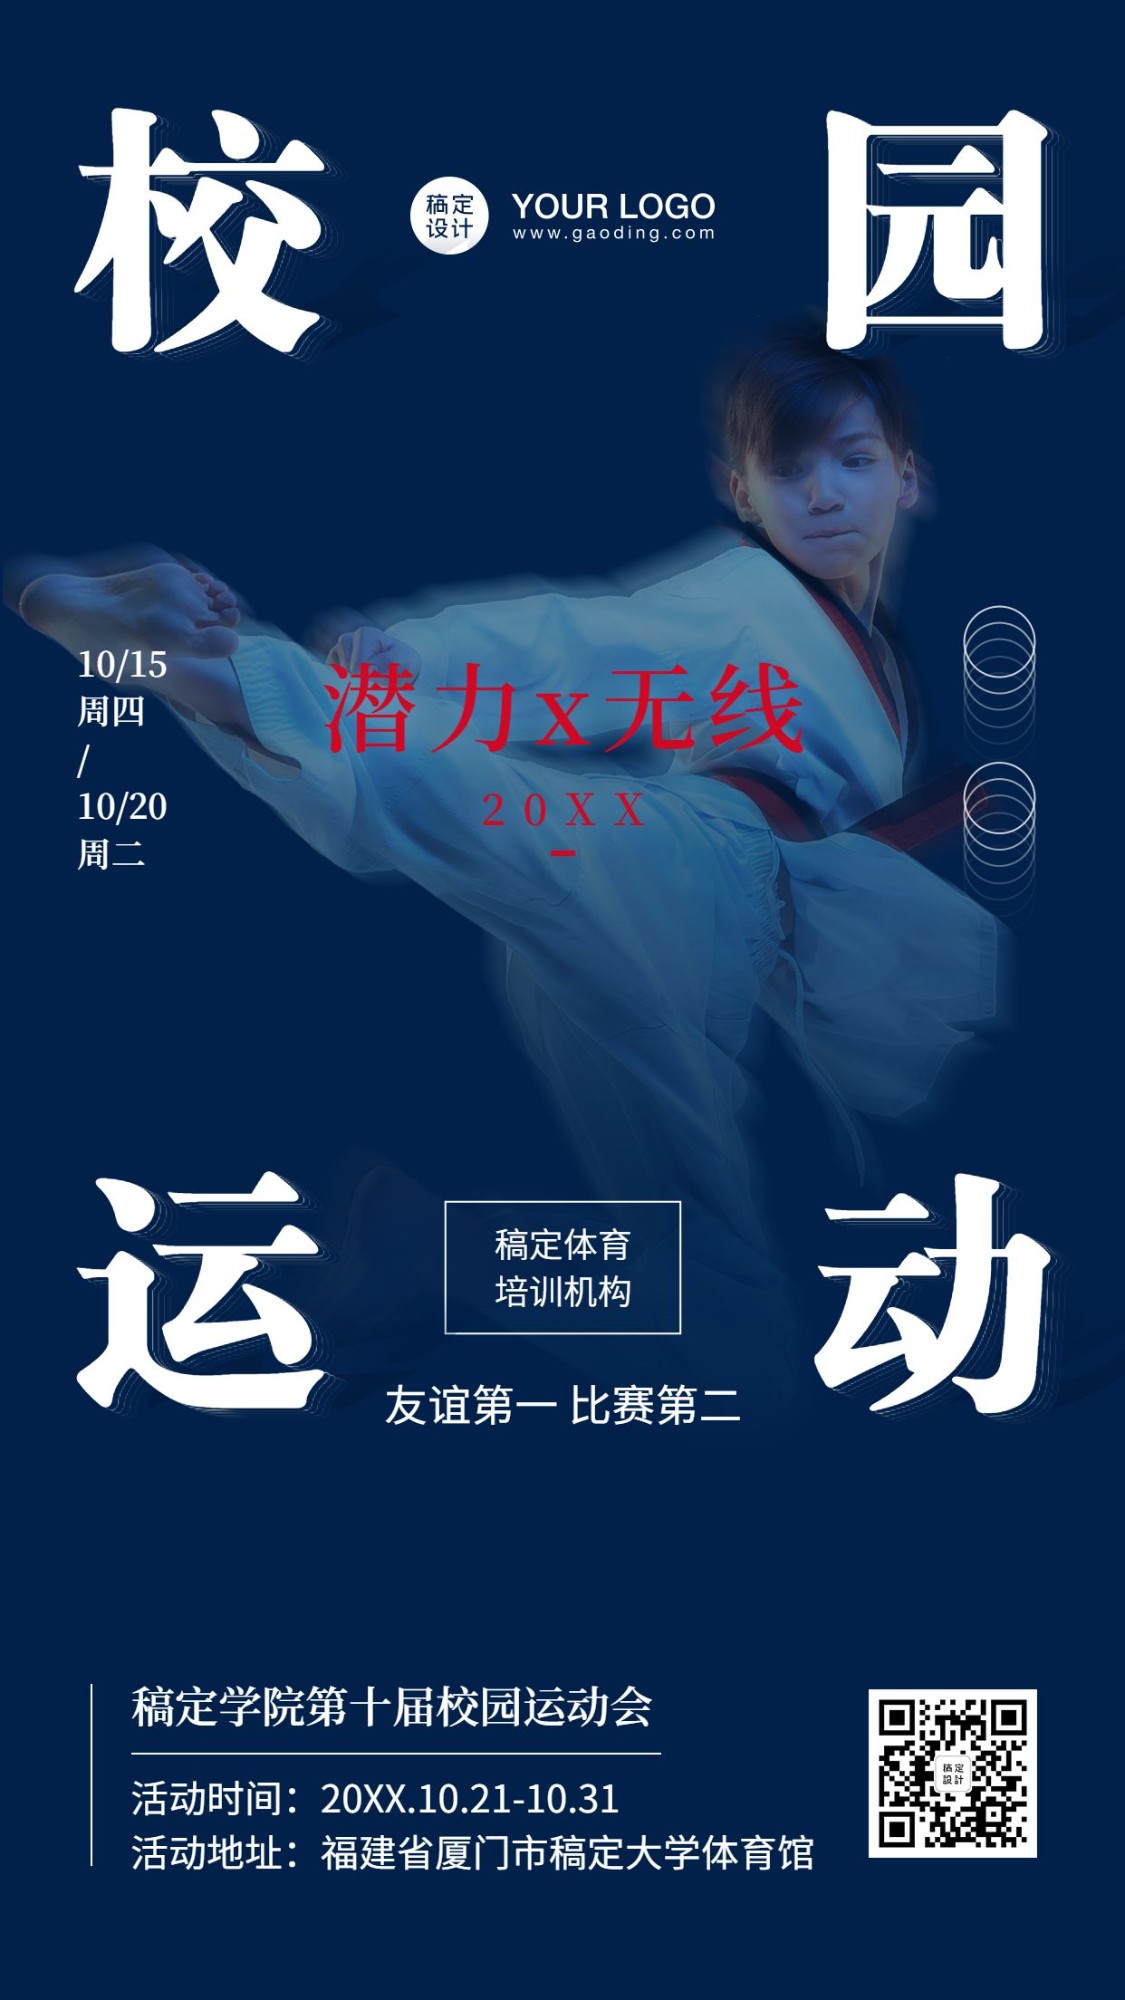 校园运动跆拳道活动招生宣传海报预览效果